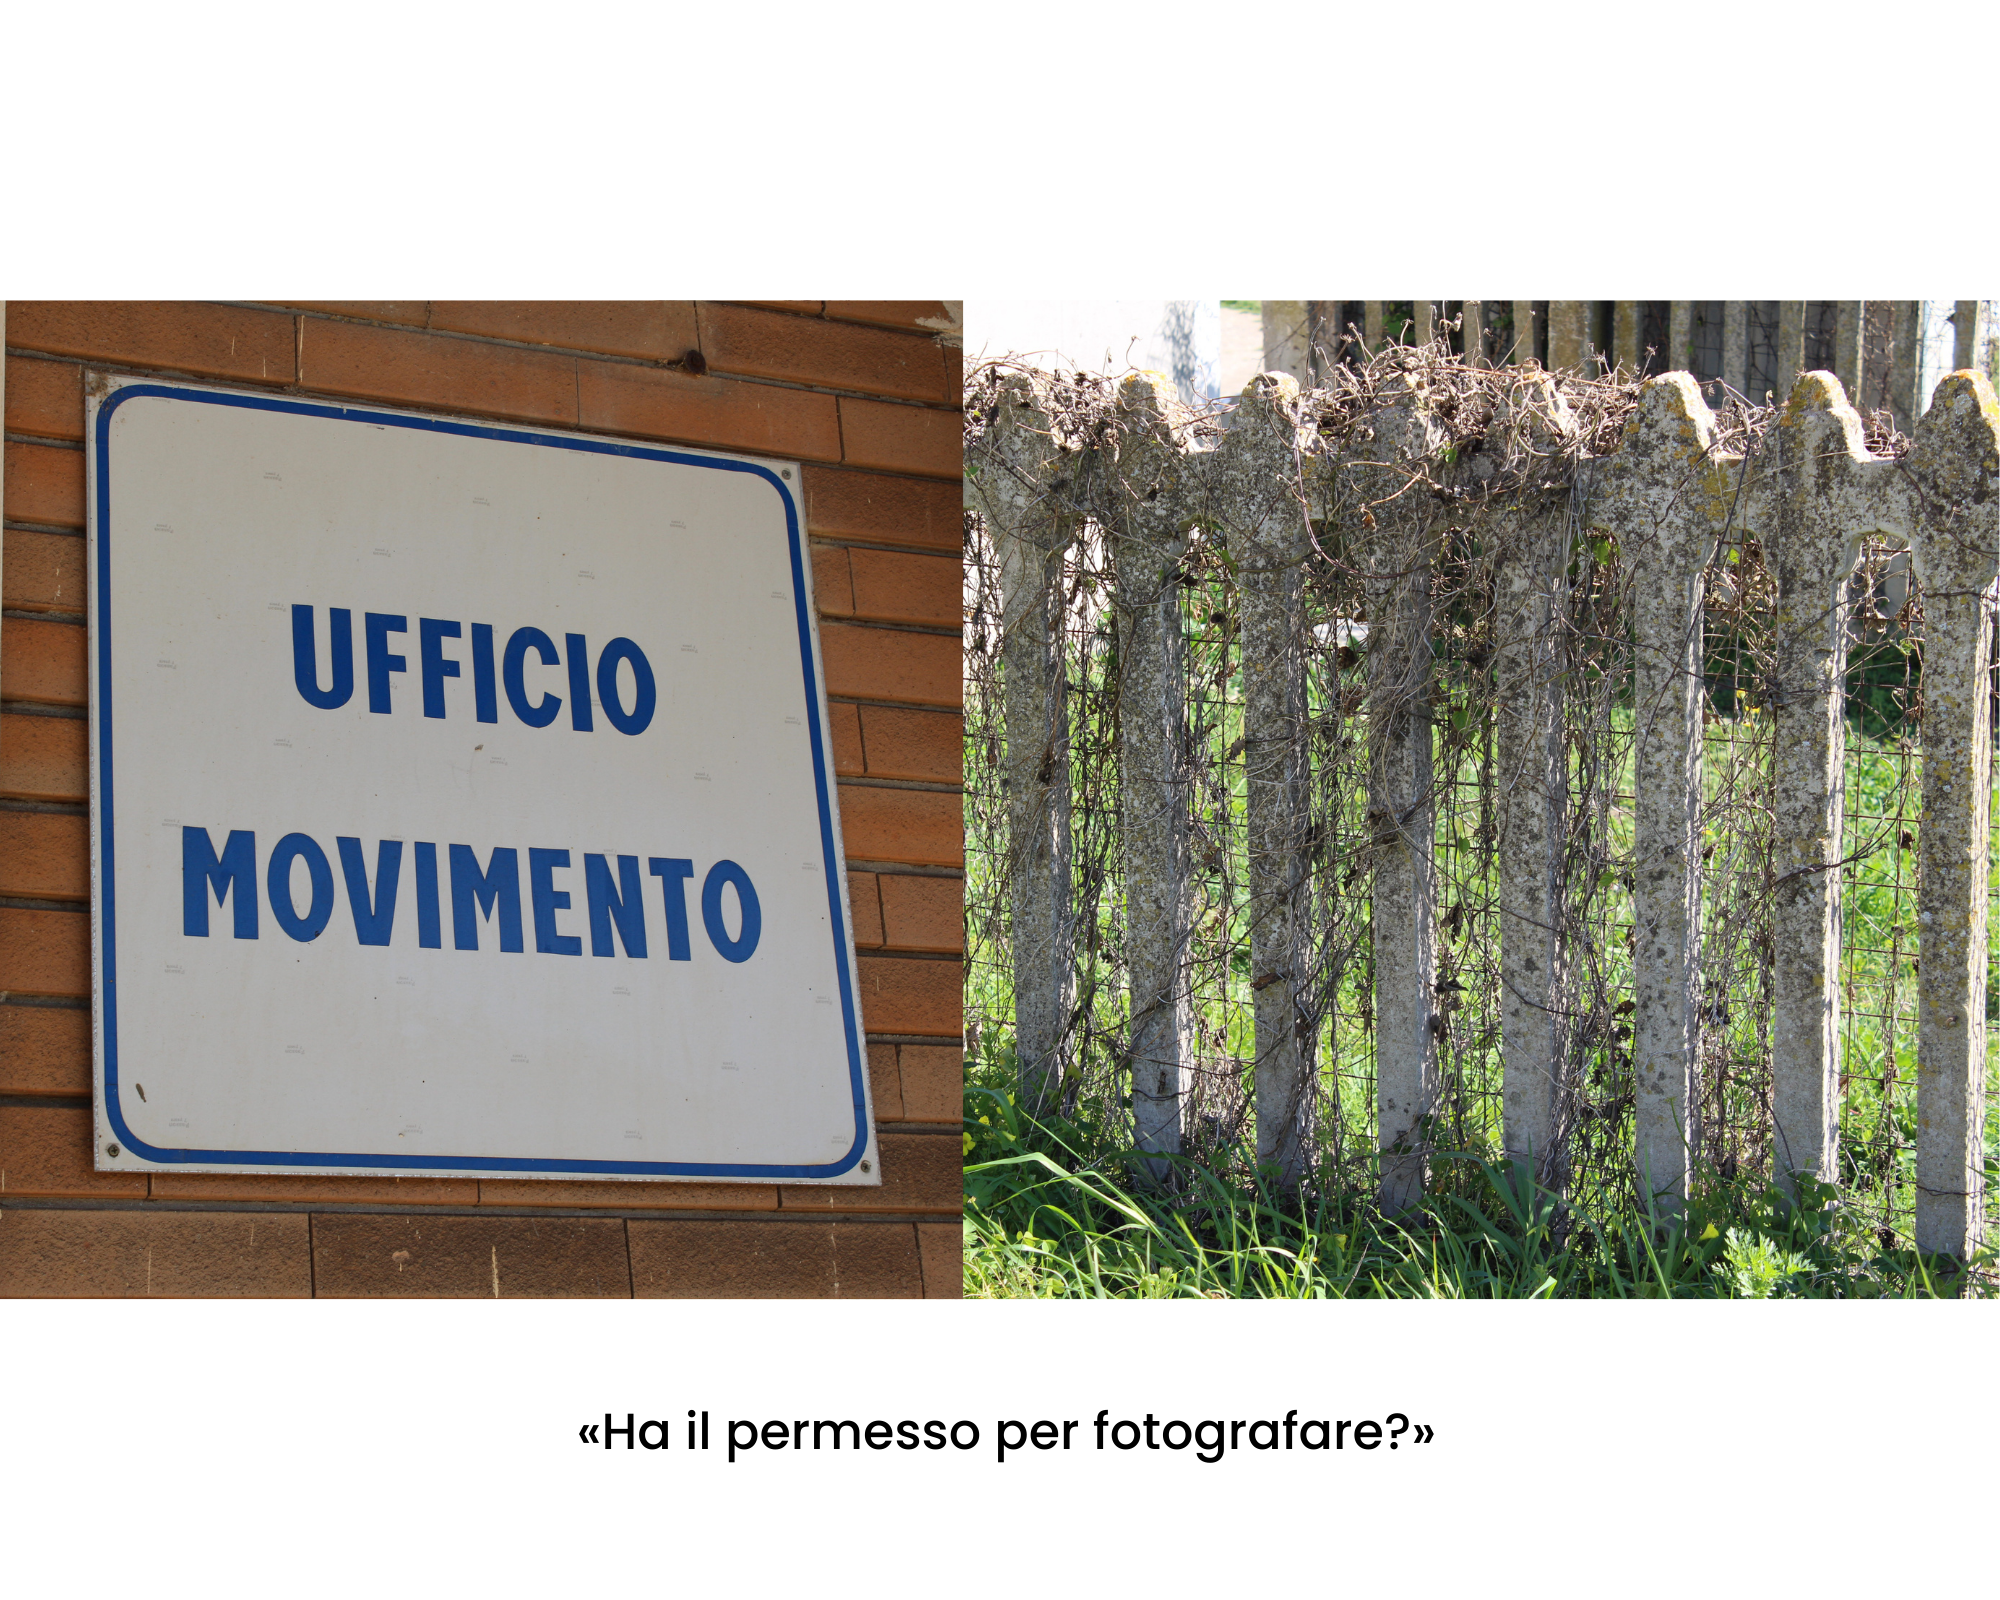 Mi chiedono: Ha il permesso di fotografare? Cartello "Ufficio movimento"; recinzione in cemento, più rete di ferro e rami secchi attorcigliati